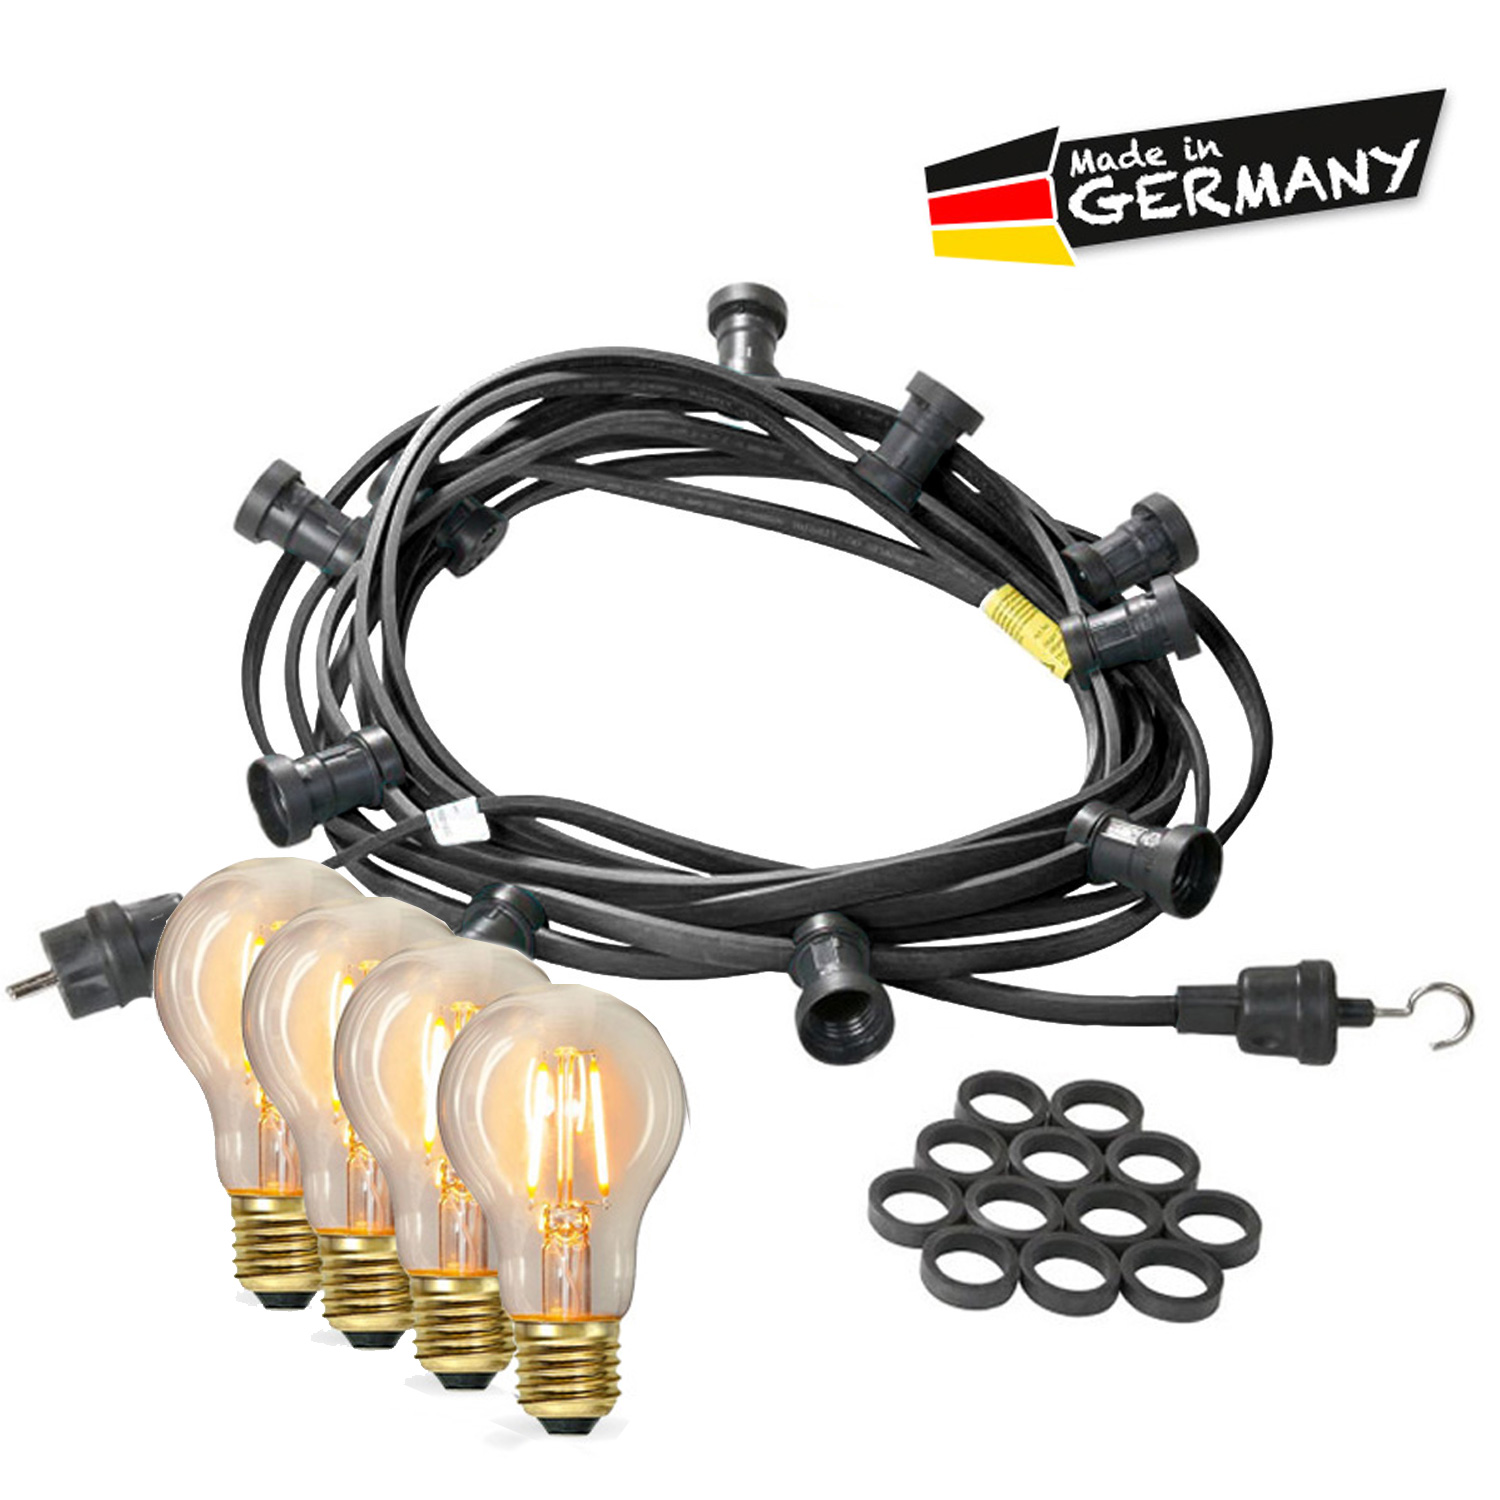 Illu-/Partylichterkette 20m - Außenlichterkette - Made in Germany - 20 Edison LED Filamentlampen